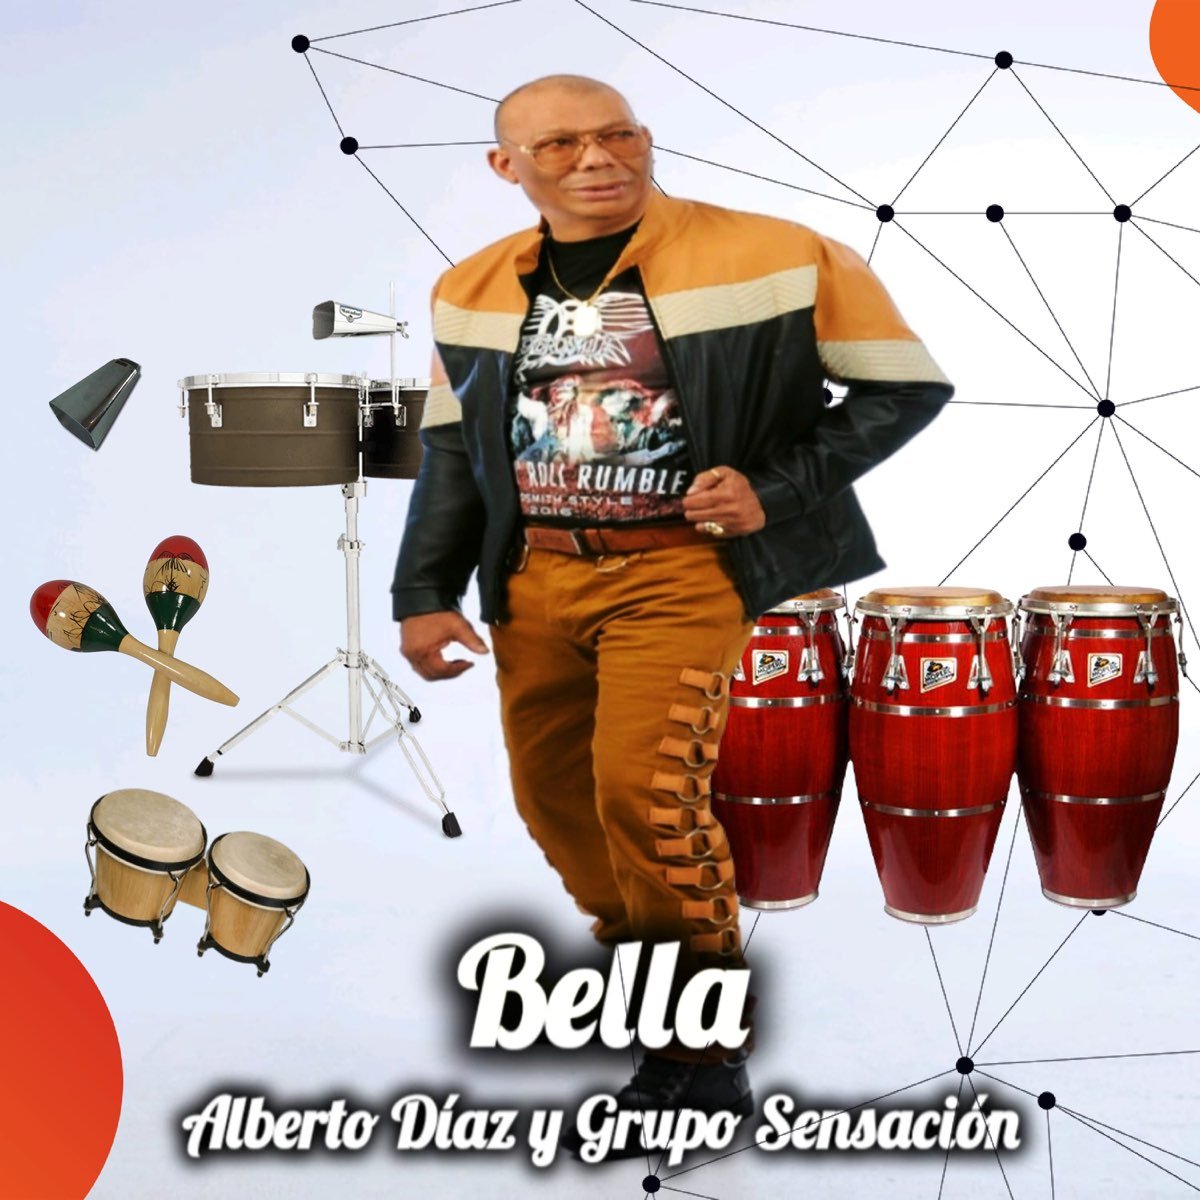 BELLA, la salsa del momento de Alberto Diaz y Grupo Sensación de Republica Dominicana-